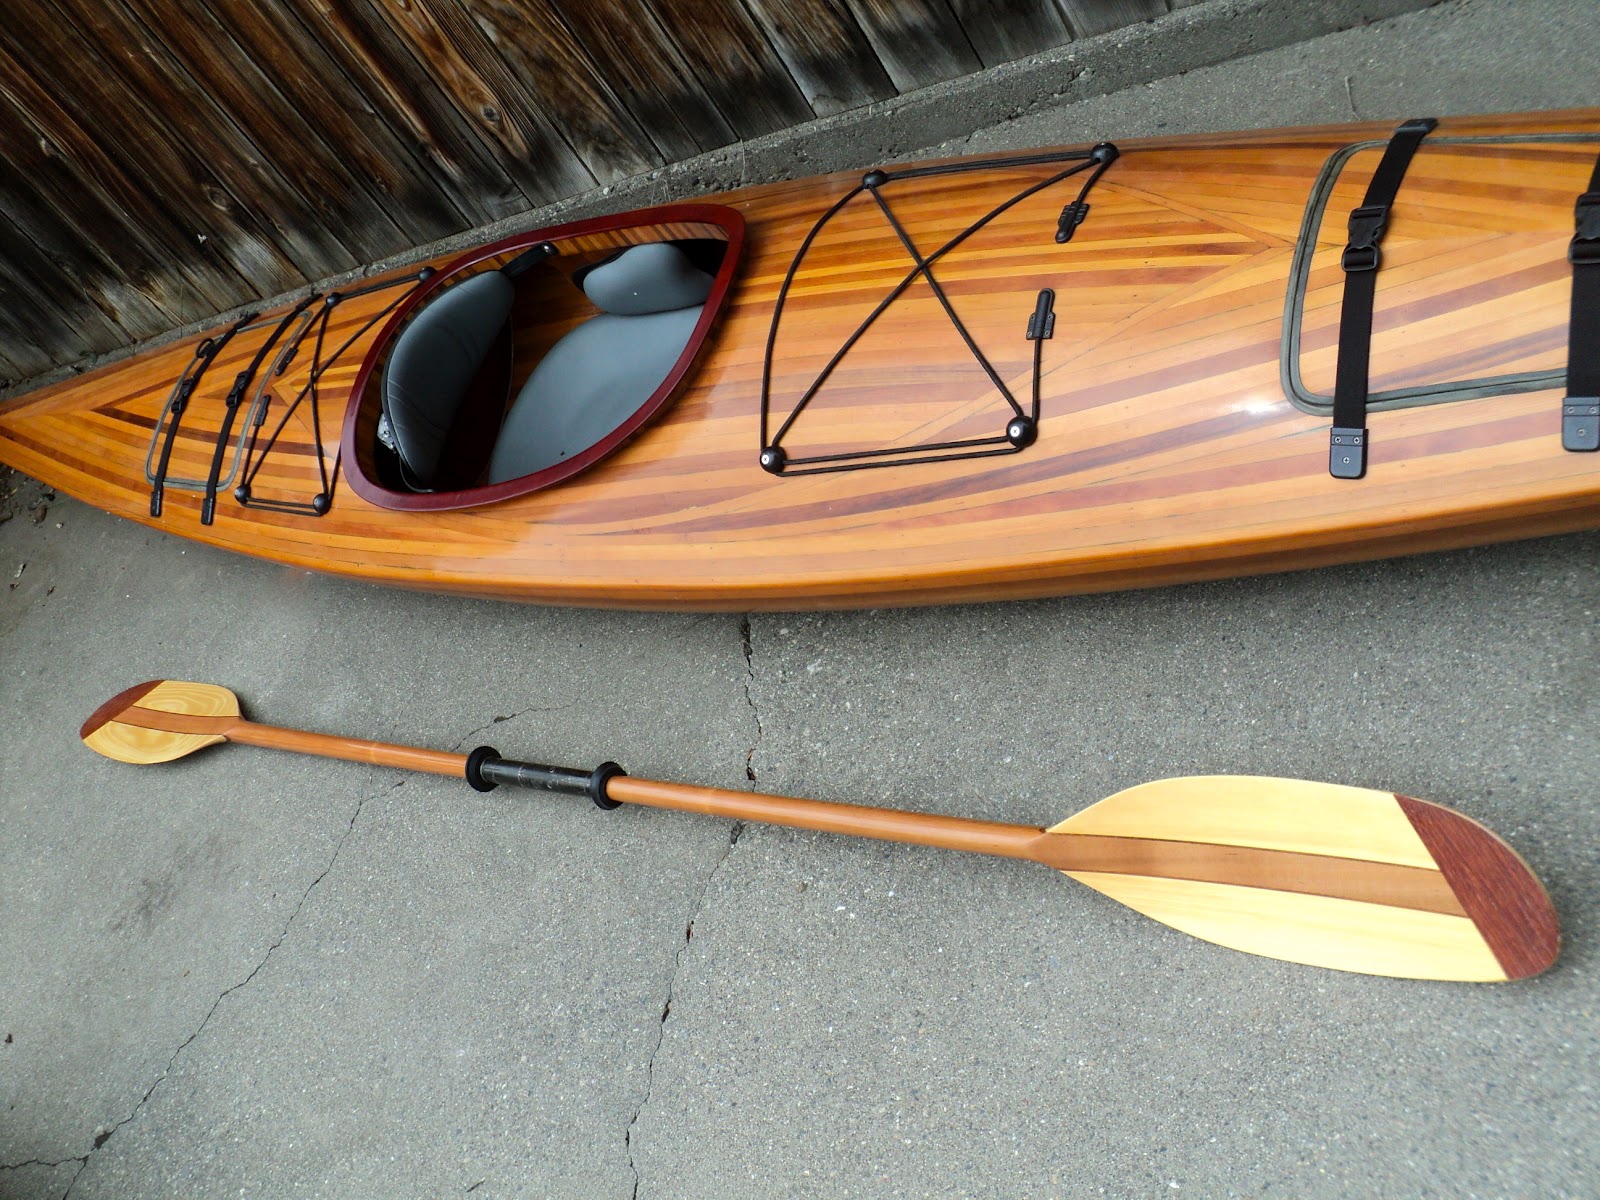 Nice Sale Today: Now $1300! Sale on Cedar Strip Wood Kayak!